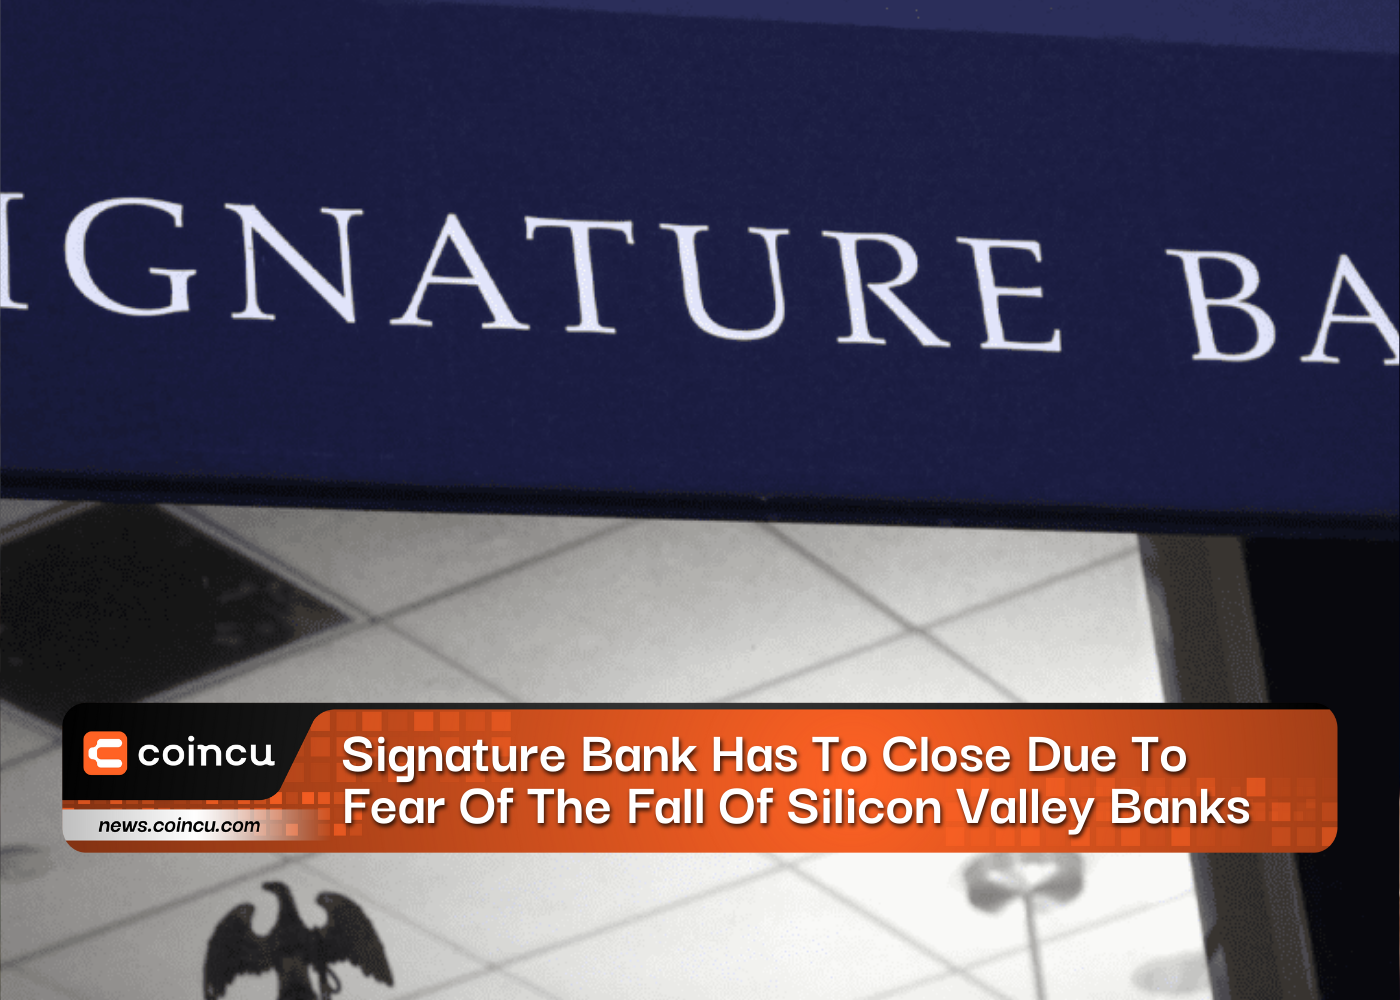 Signature Bank вынужден закрыться из-за опасений падения банков Кремниевой долины